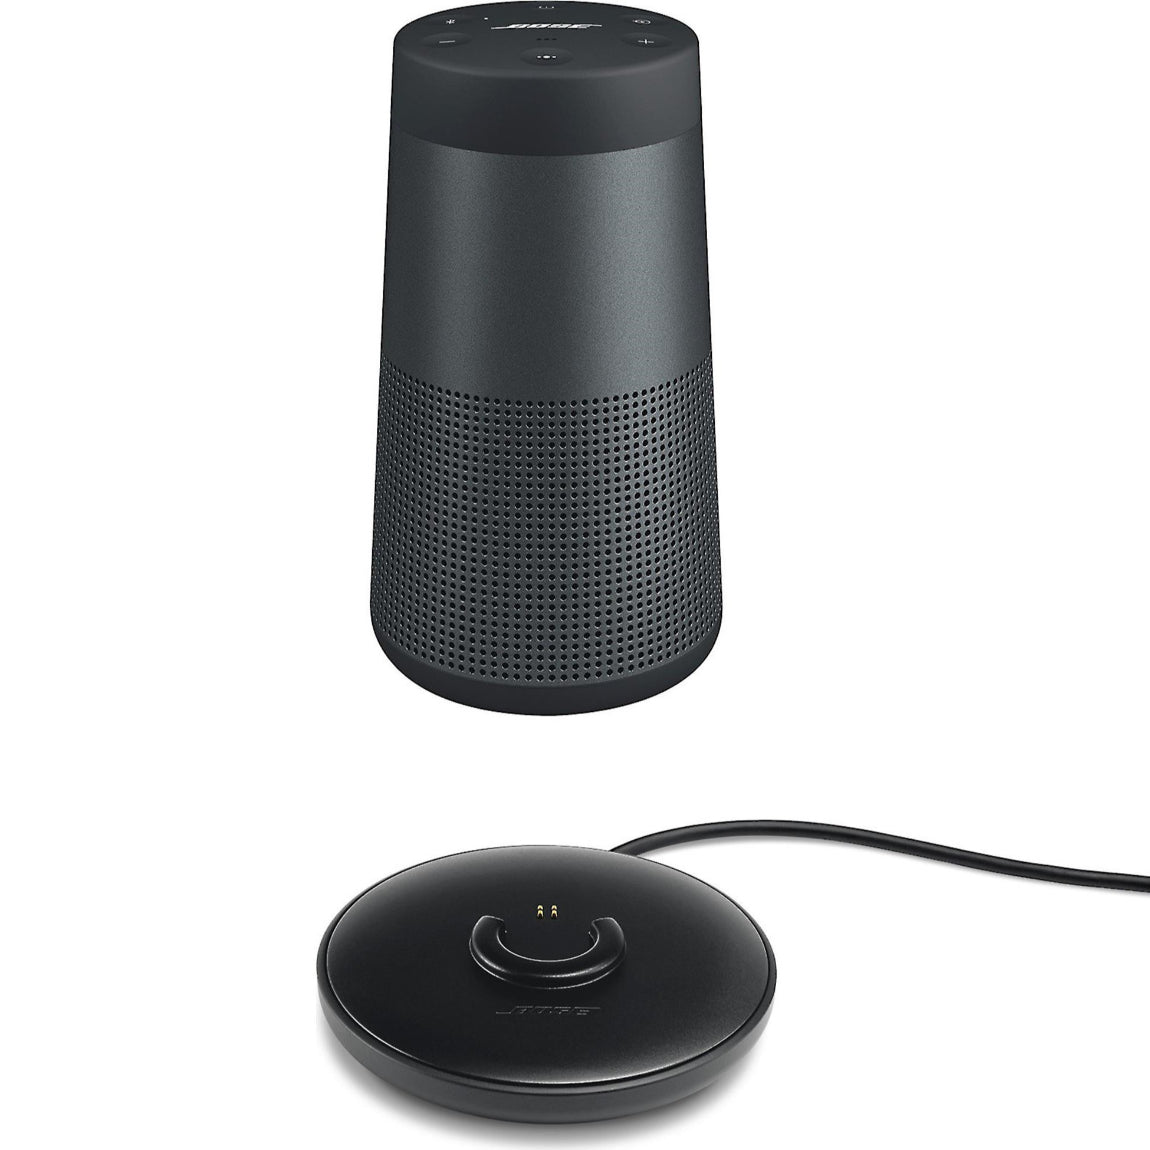 SoundLink Revolve II Bluetooth®
speaker & SoundLink Revolve
Charging Cradle